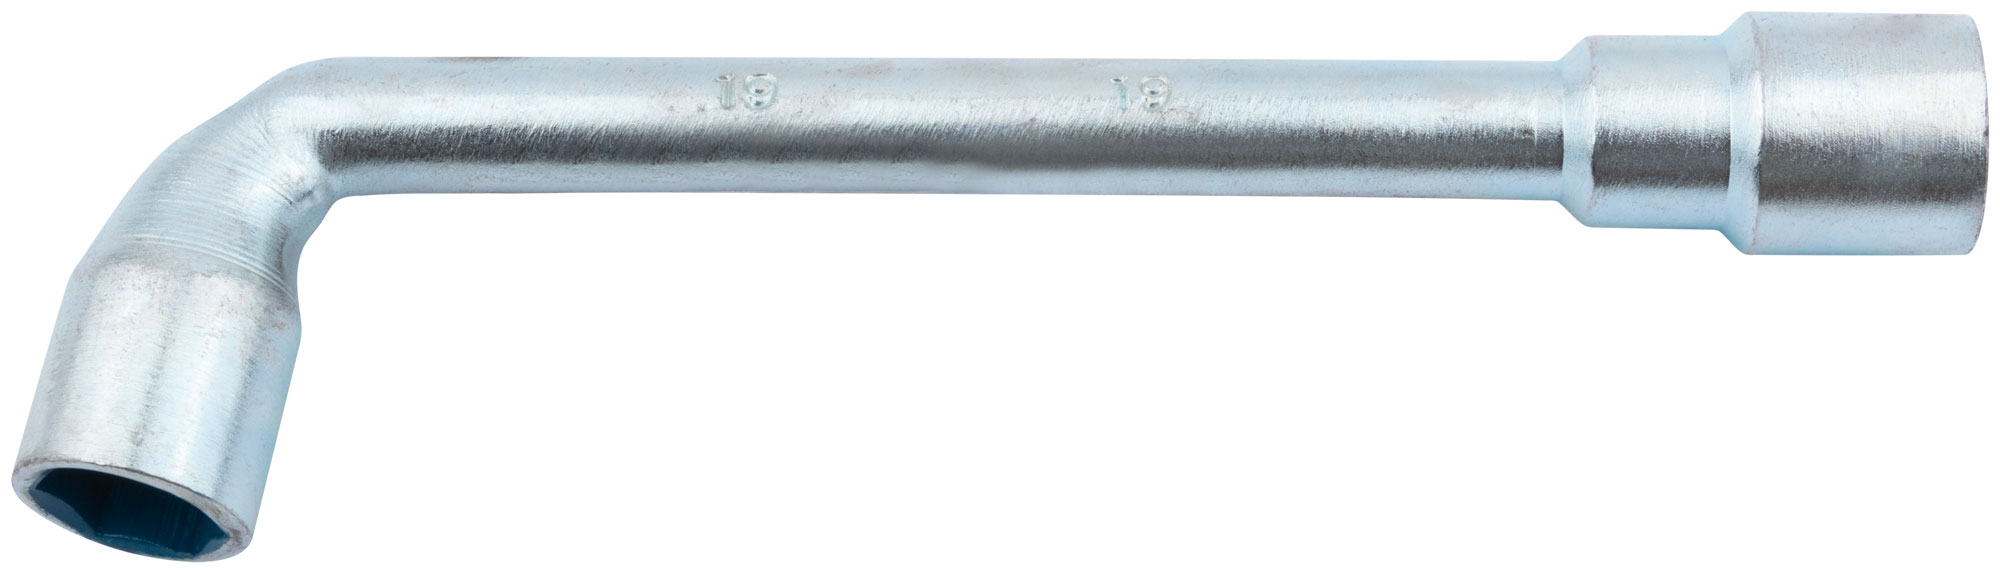 Ключ торцевой L-образный 19 мм. FIT 63019 г образный торцевой ключ kendo